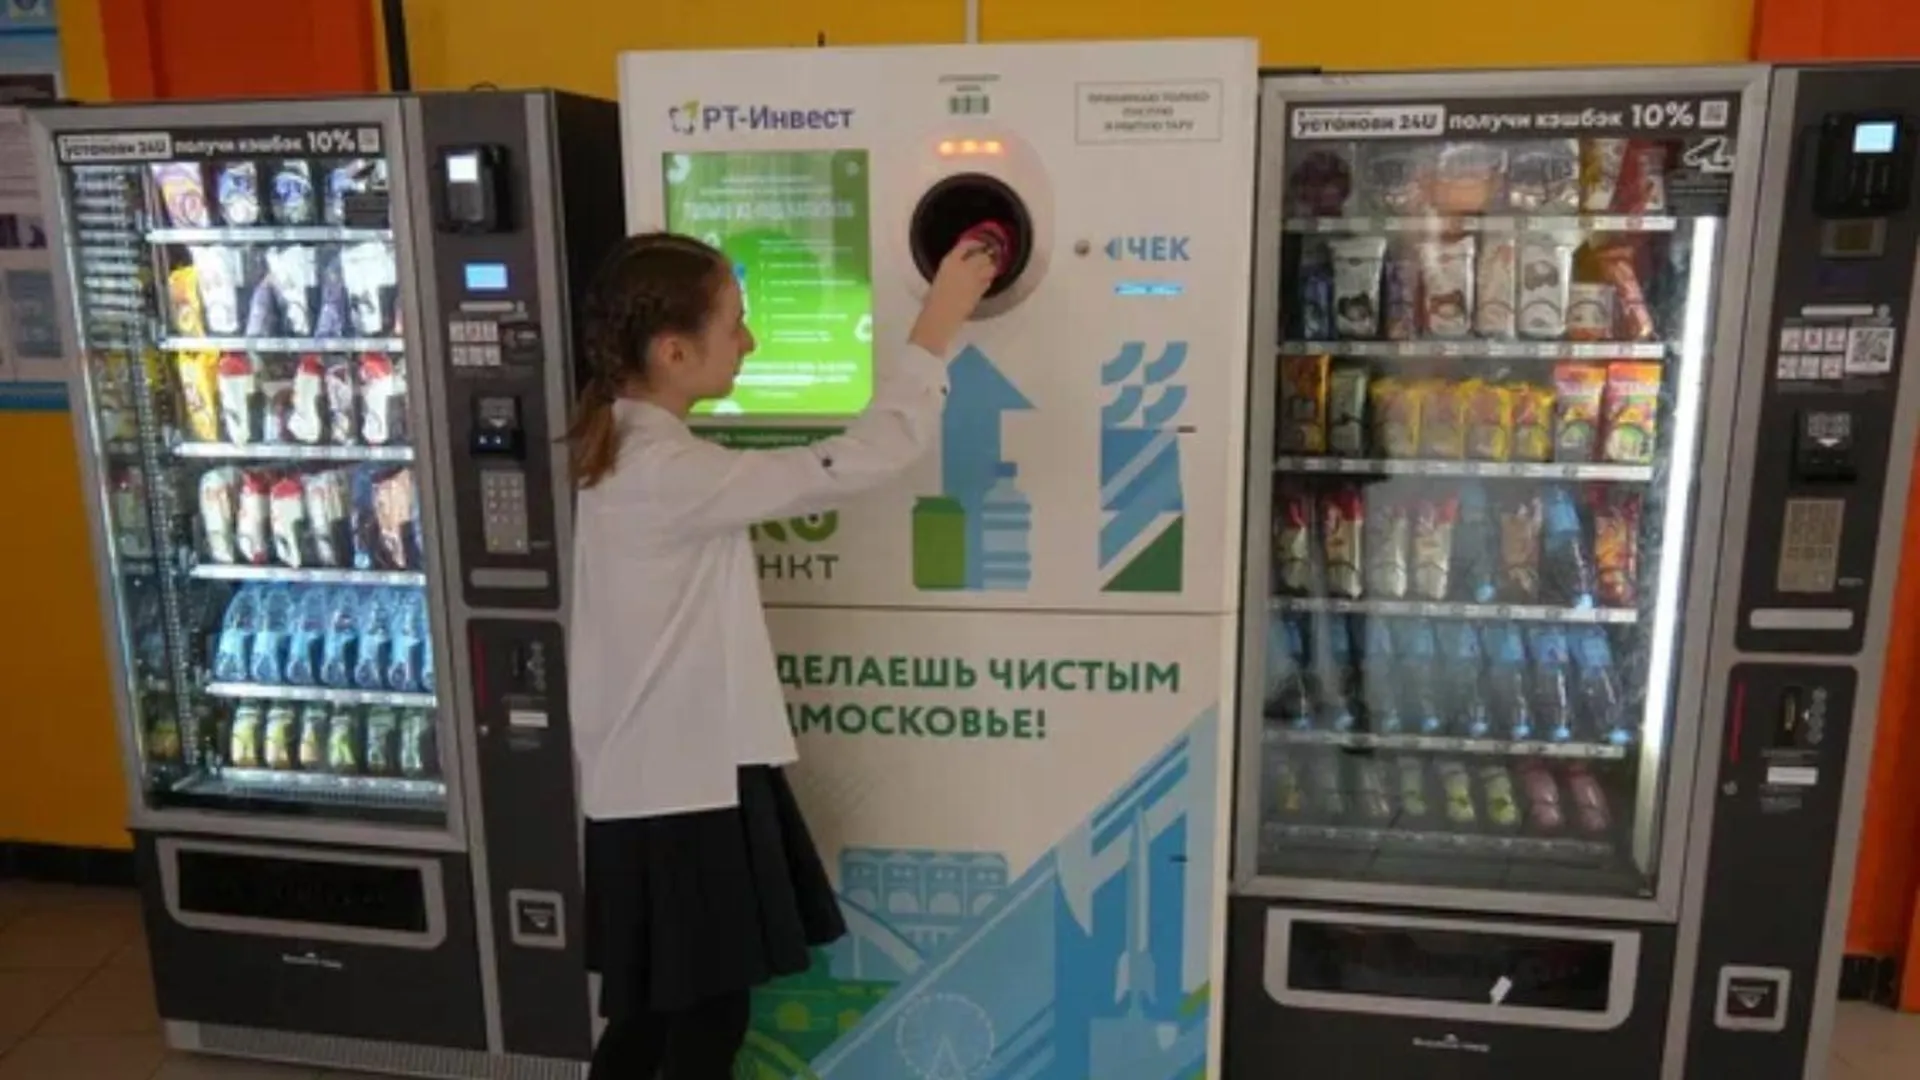 В марте жители московского региона сдали в фандоматы «РТ-Инвест» миллион банок и бутылок